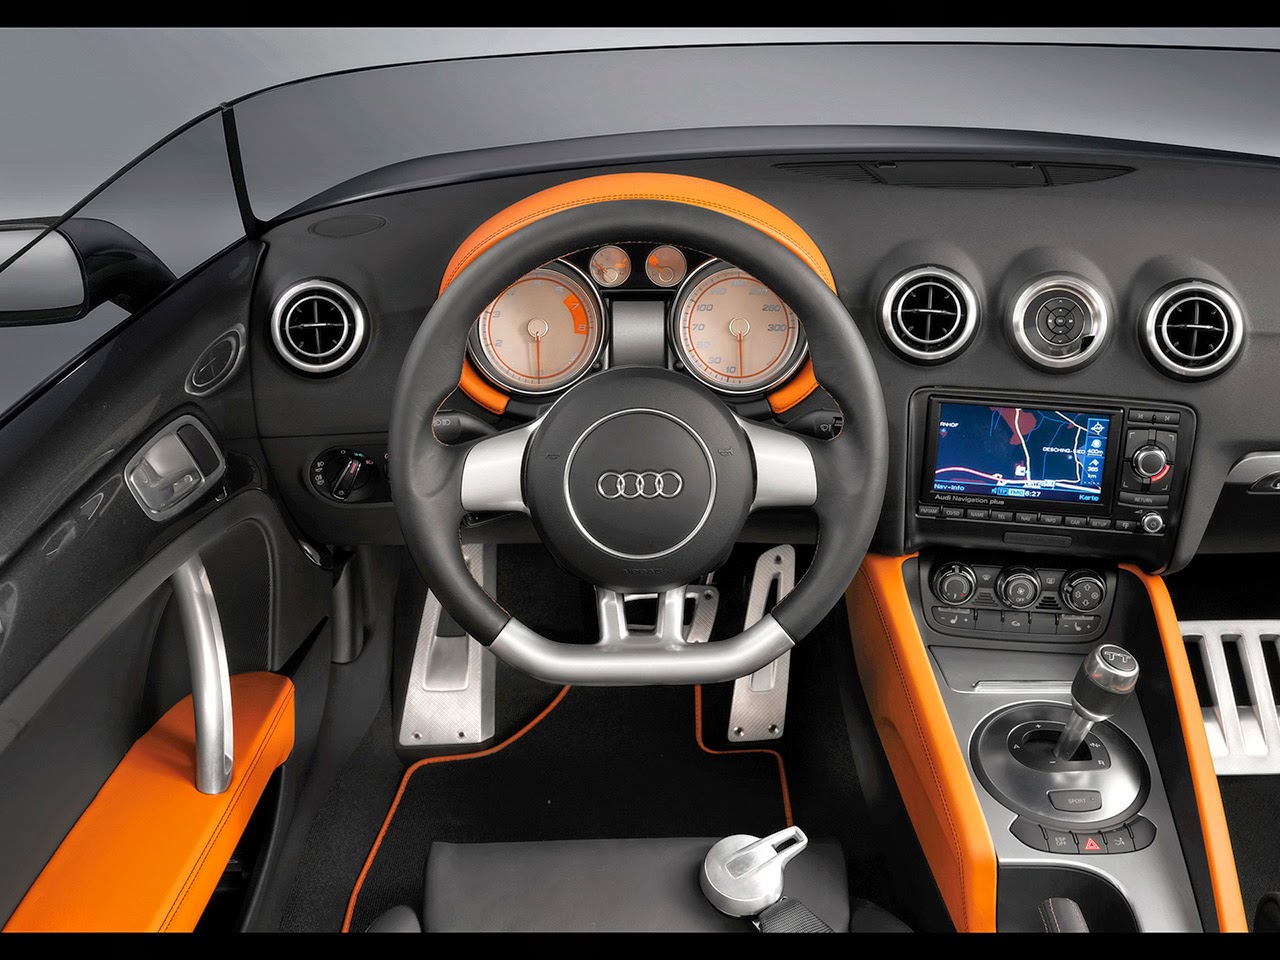 The Car Club Audi Interior